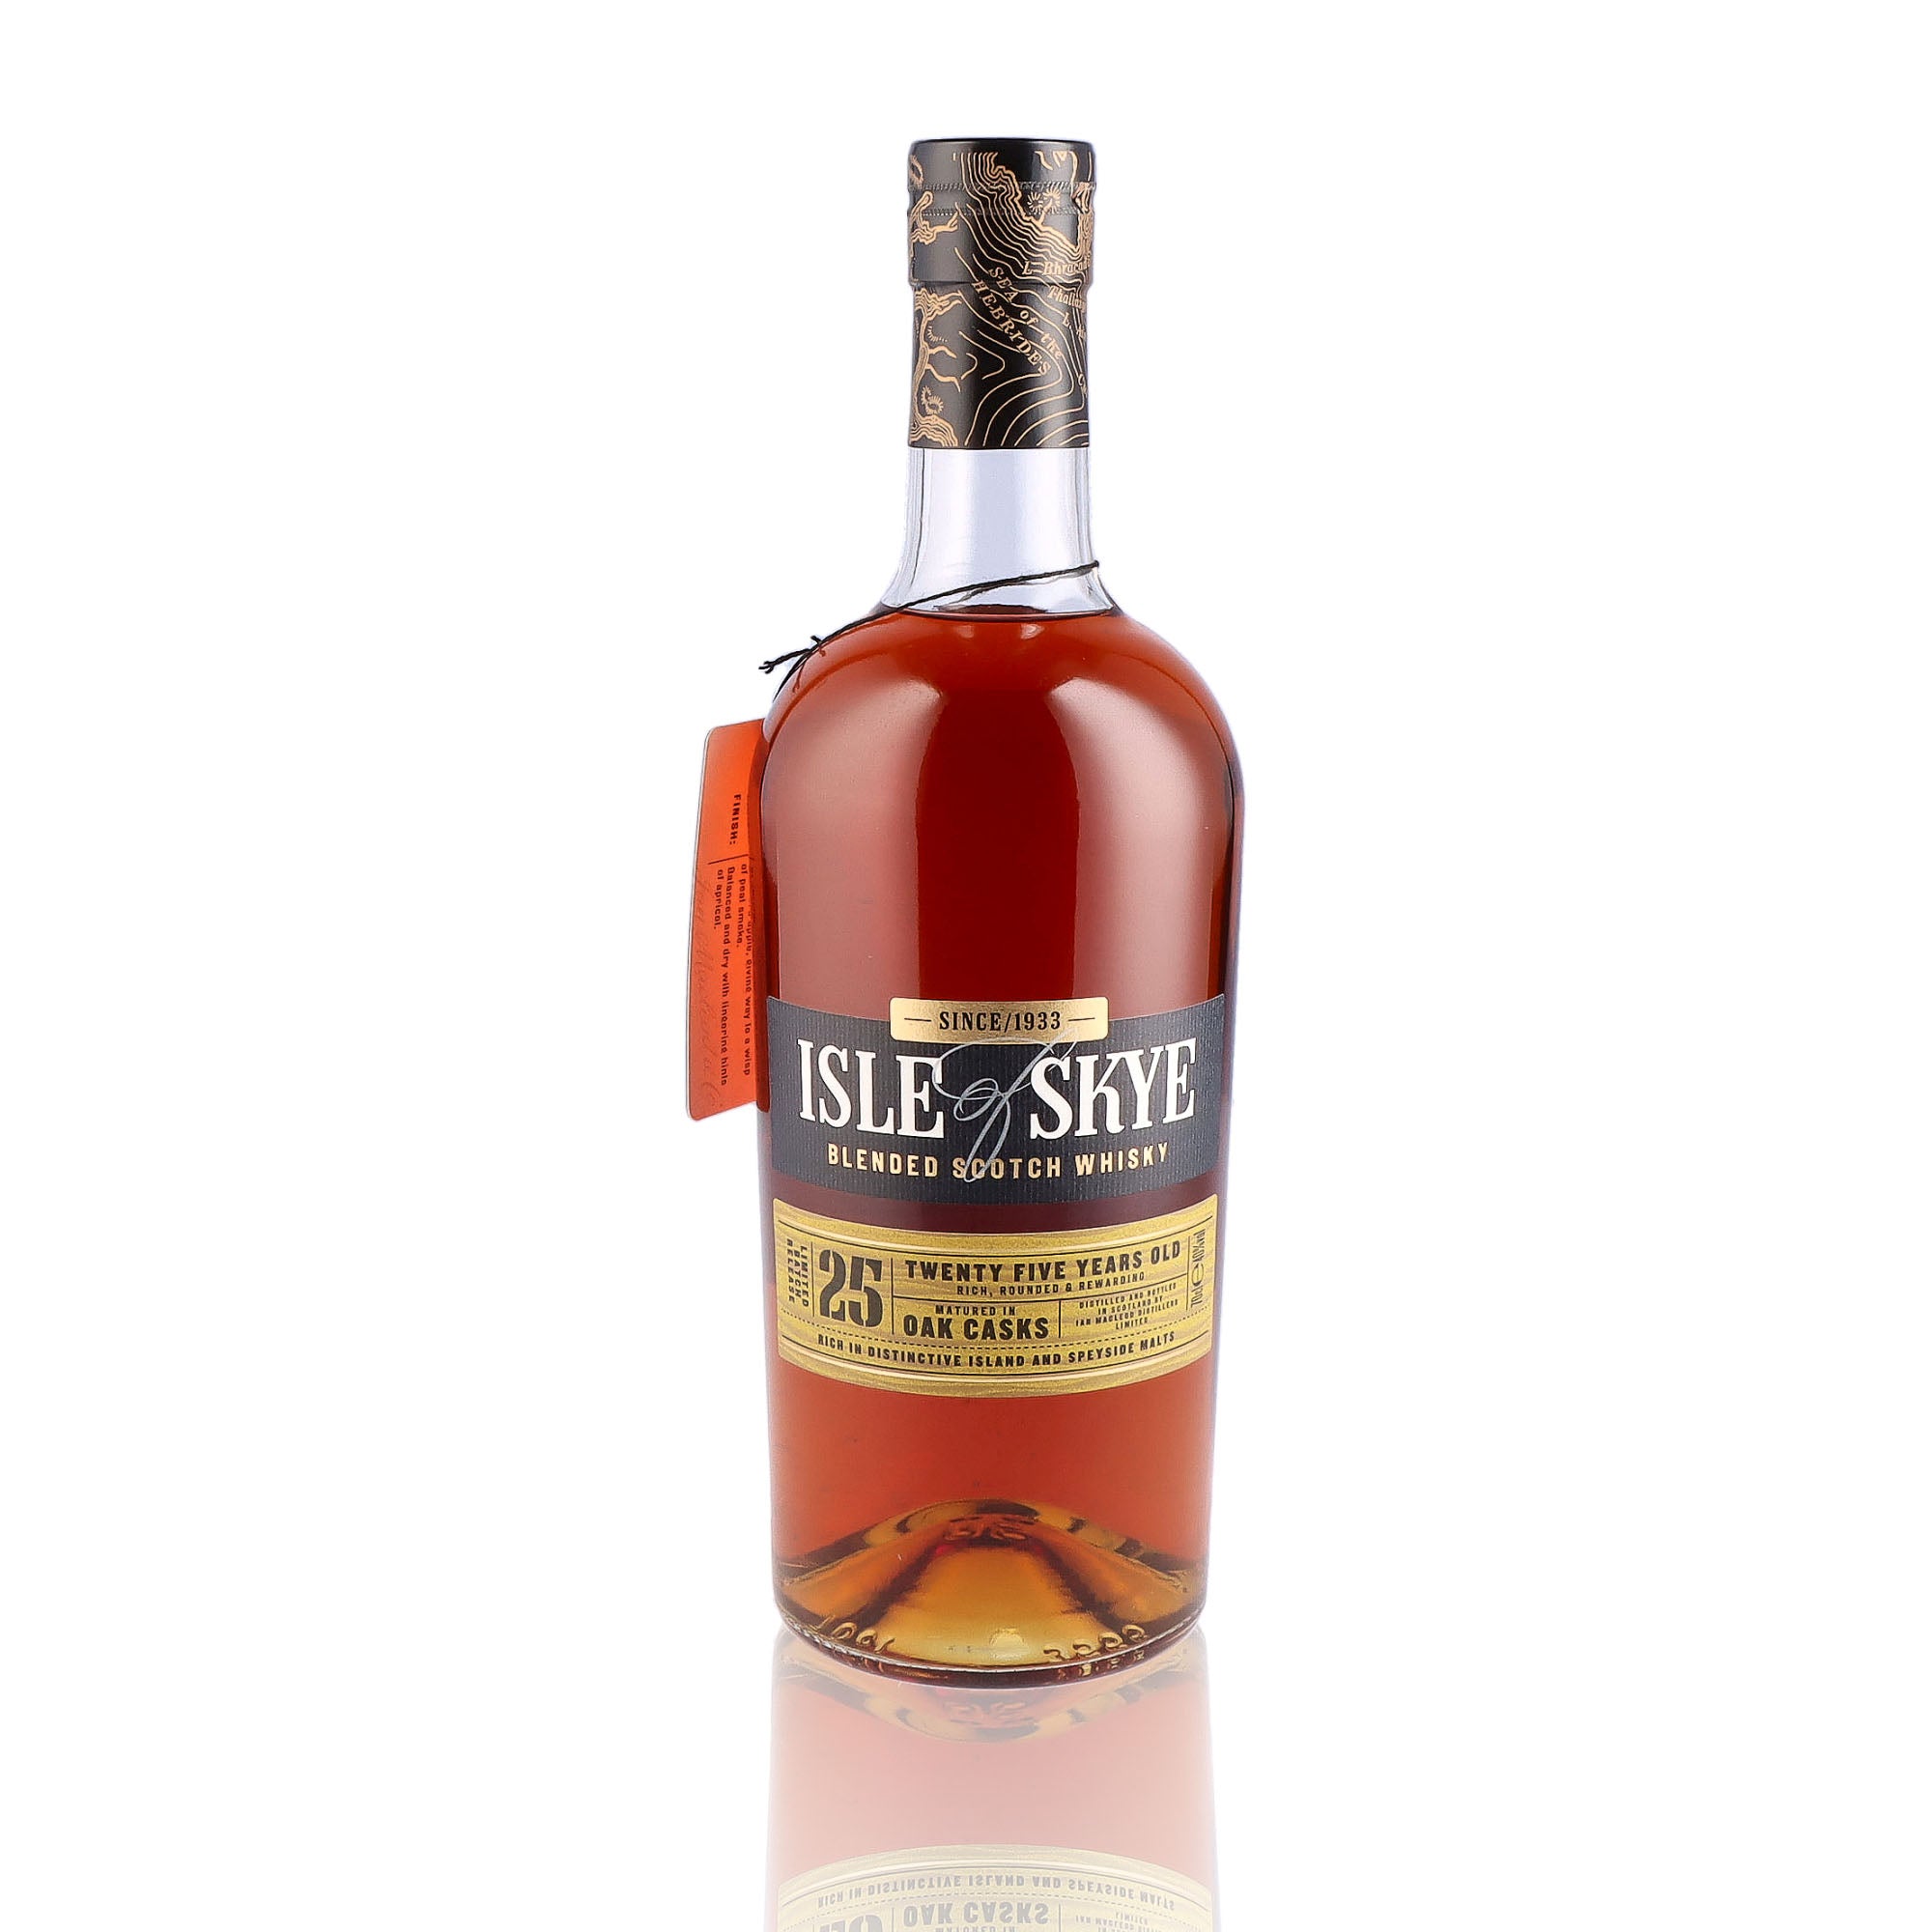 Une bouteille de Scotch Whisky Blends de la marque Isle of Skye, 25 ans d'âge.